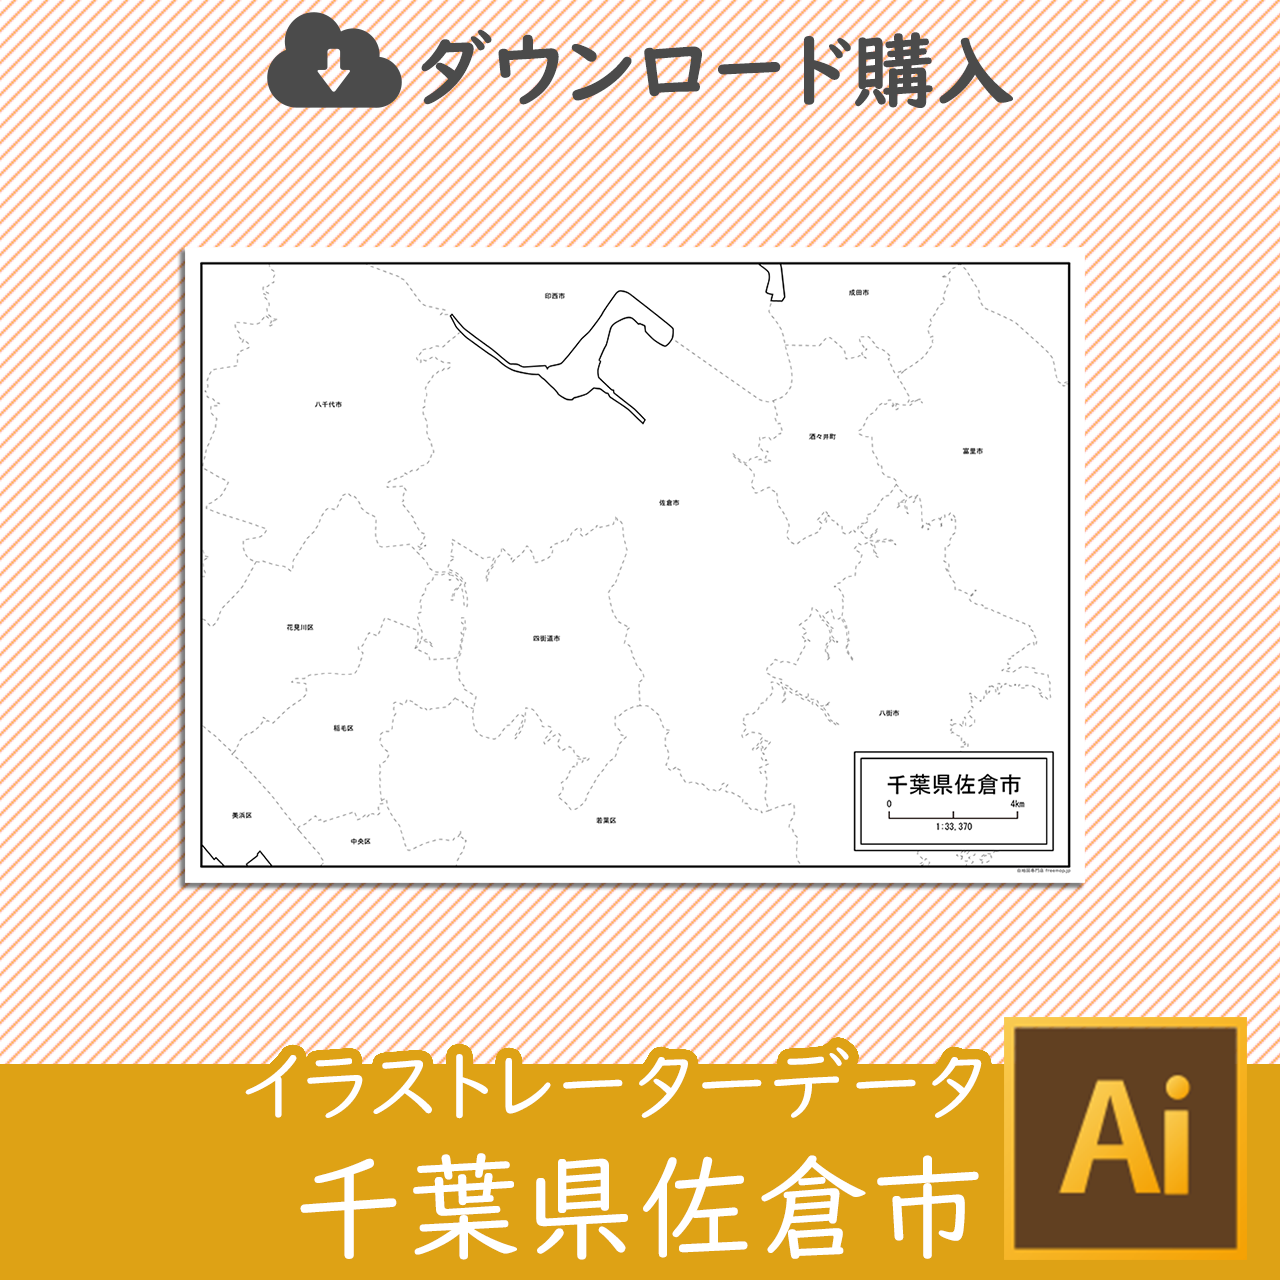 佐倉市のaiデータのサムネイル画像